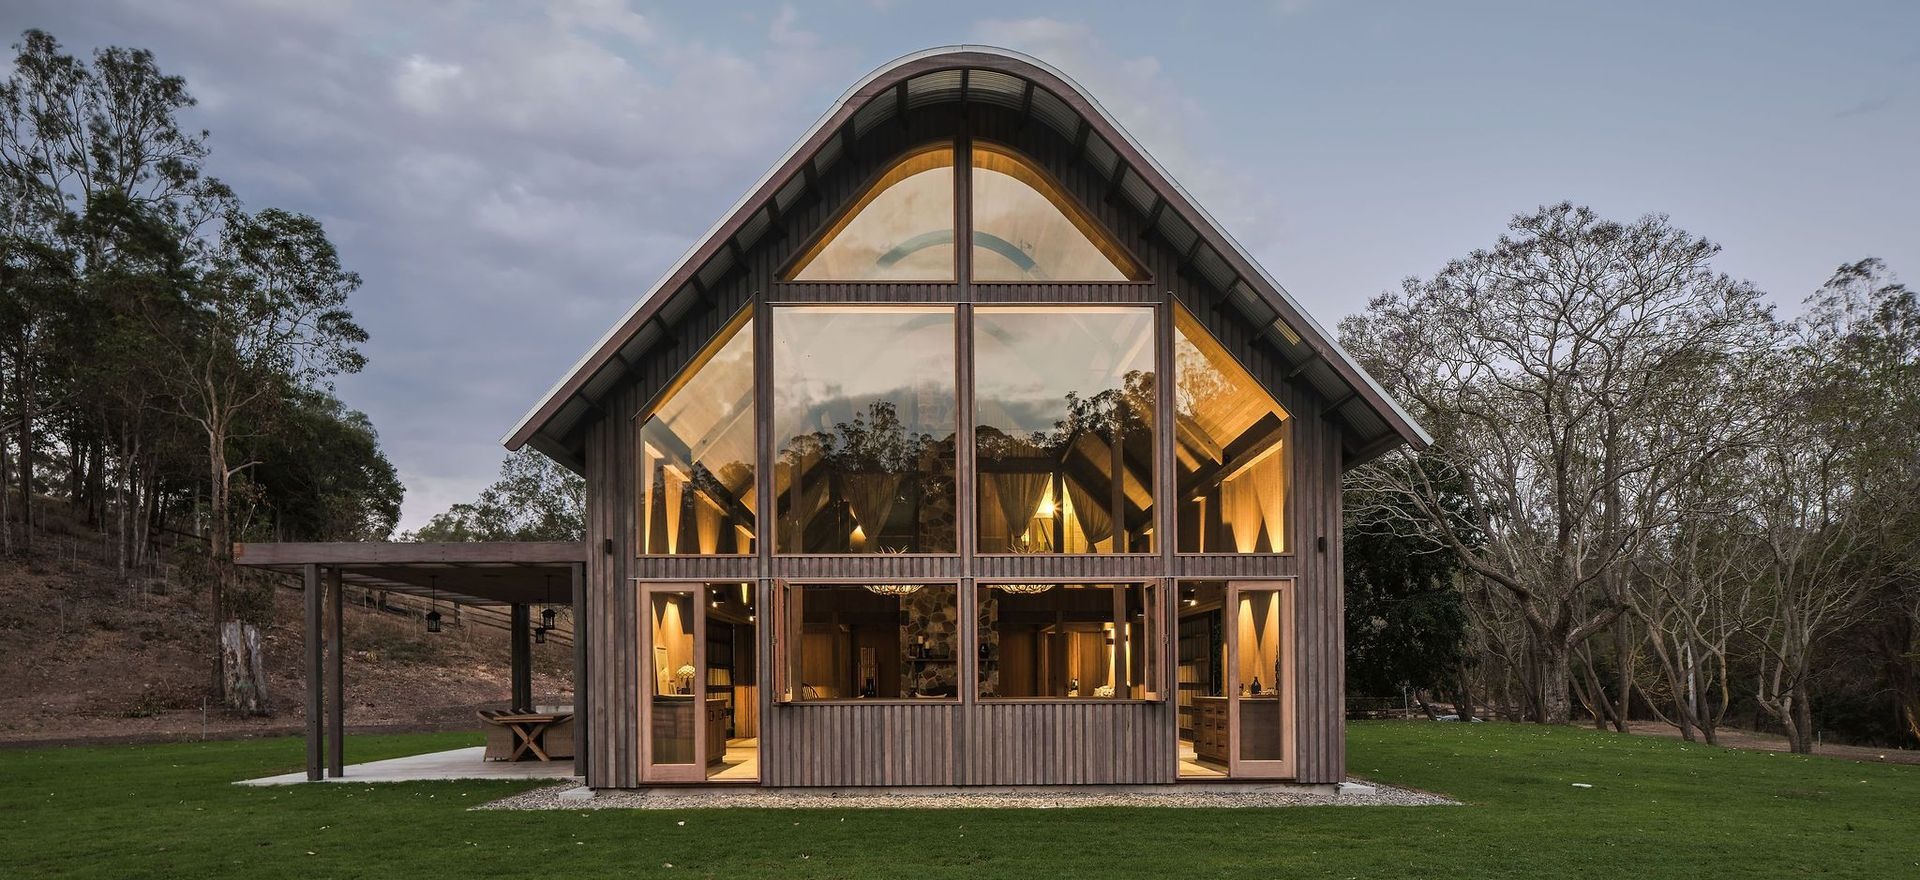 10 of the best barn houses from across Australia